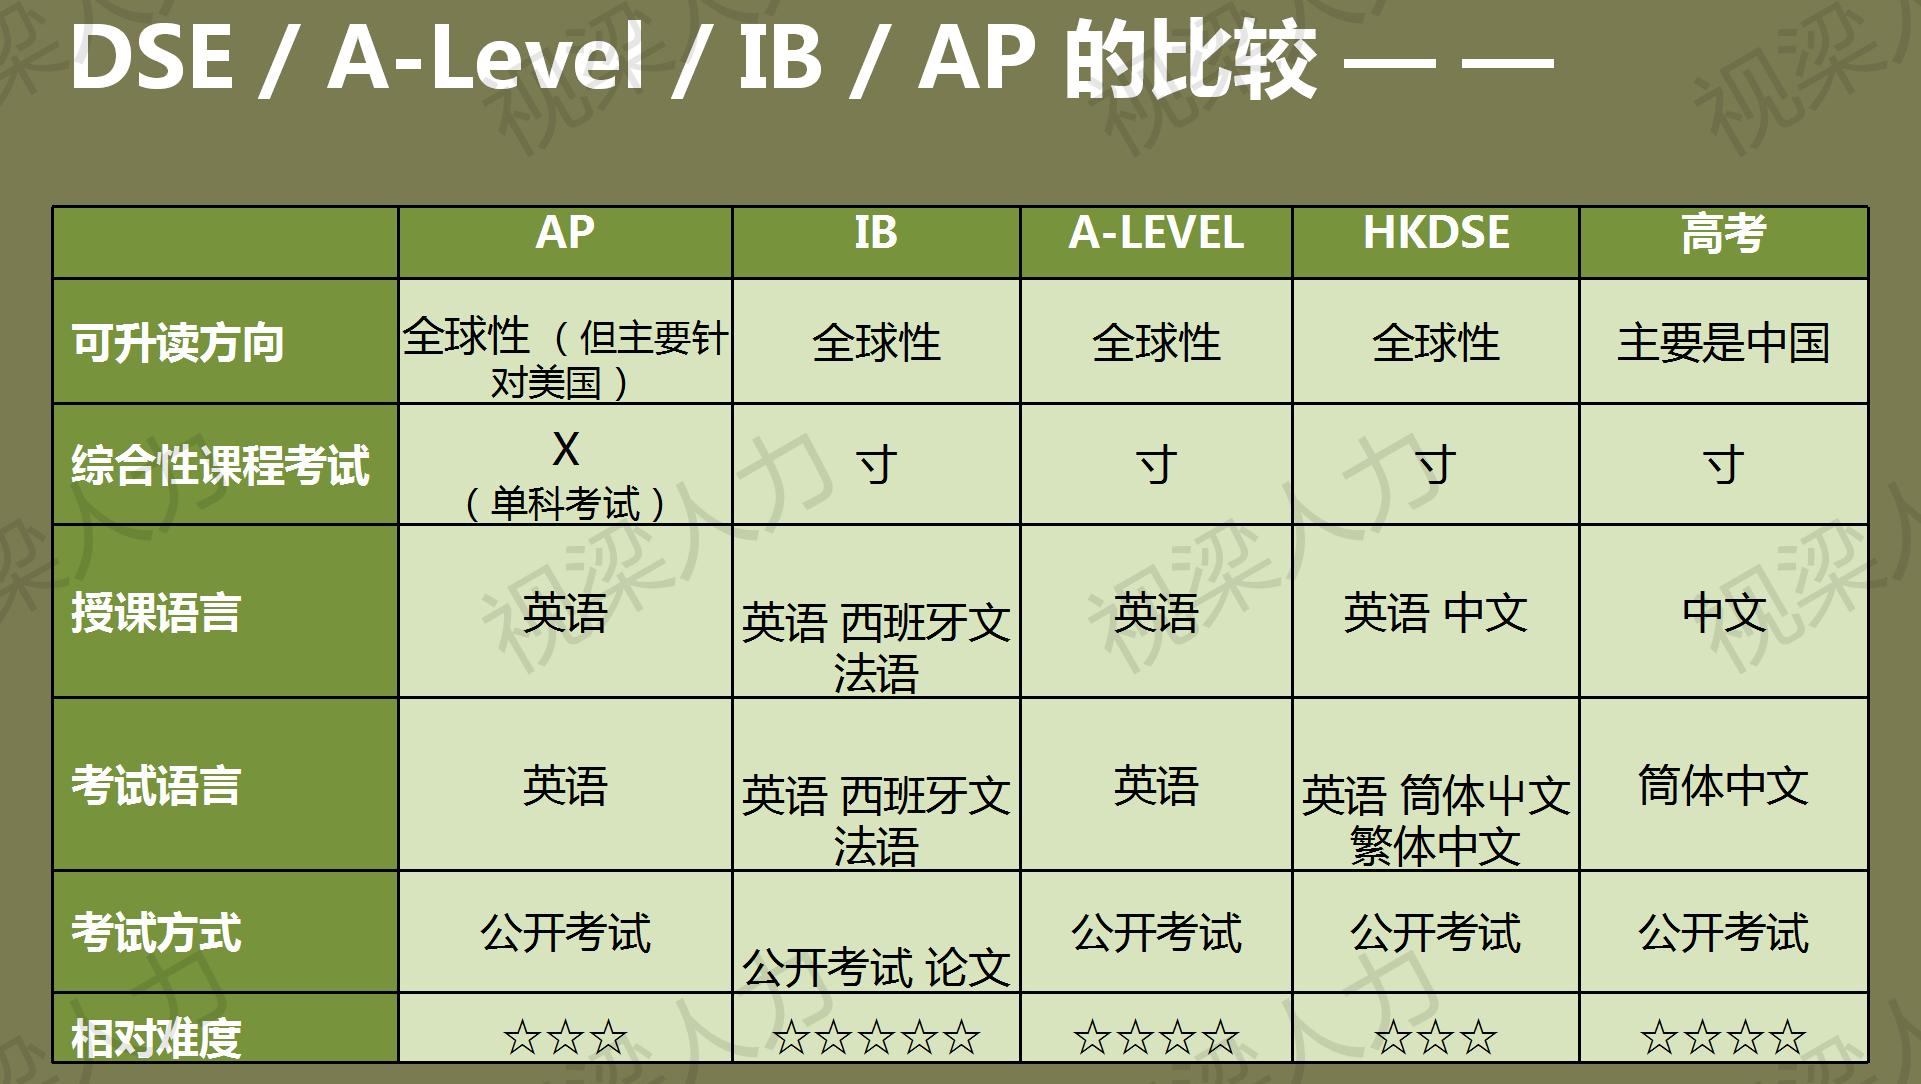 香港中学文凭课程 (HKDSE) ver 2.0_41.jpg